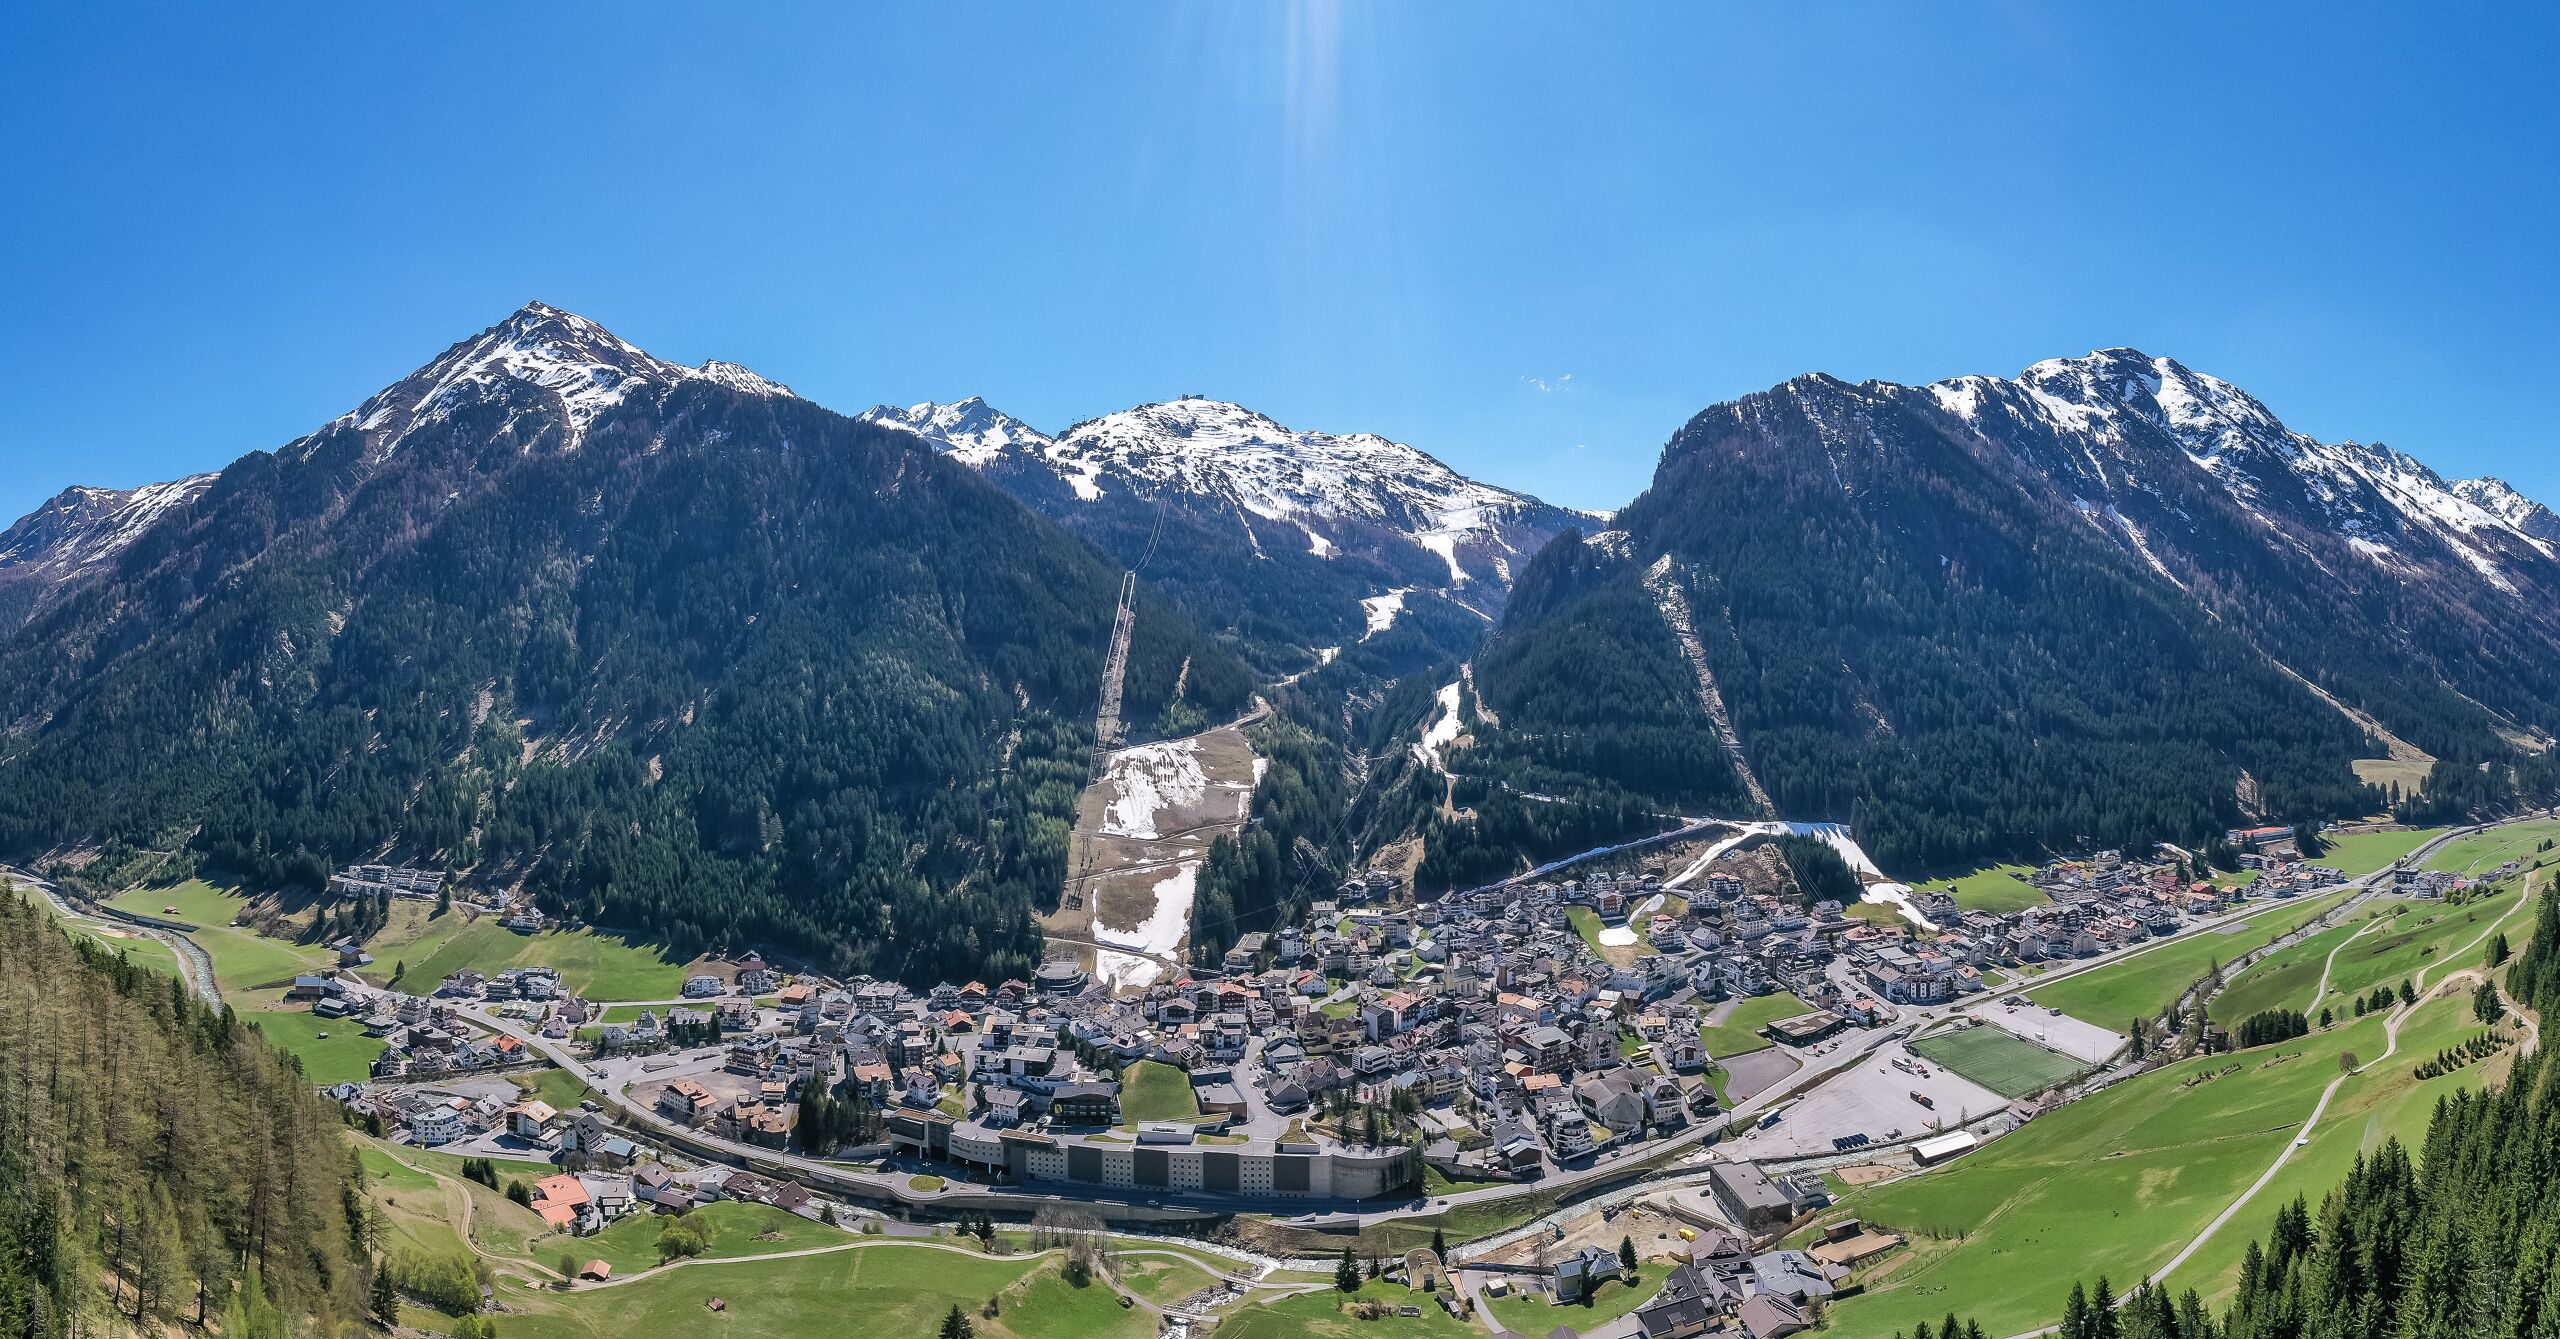 Tirol hoopt op betere tijden en veel wintersporters, na een desastreus einde van het afgelopen sneeuwseizoen - Johann GRODER